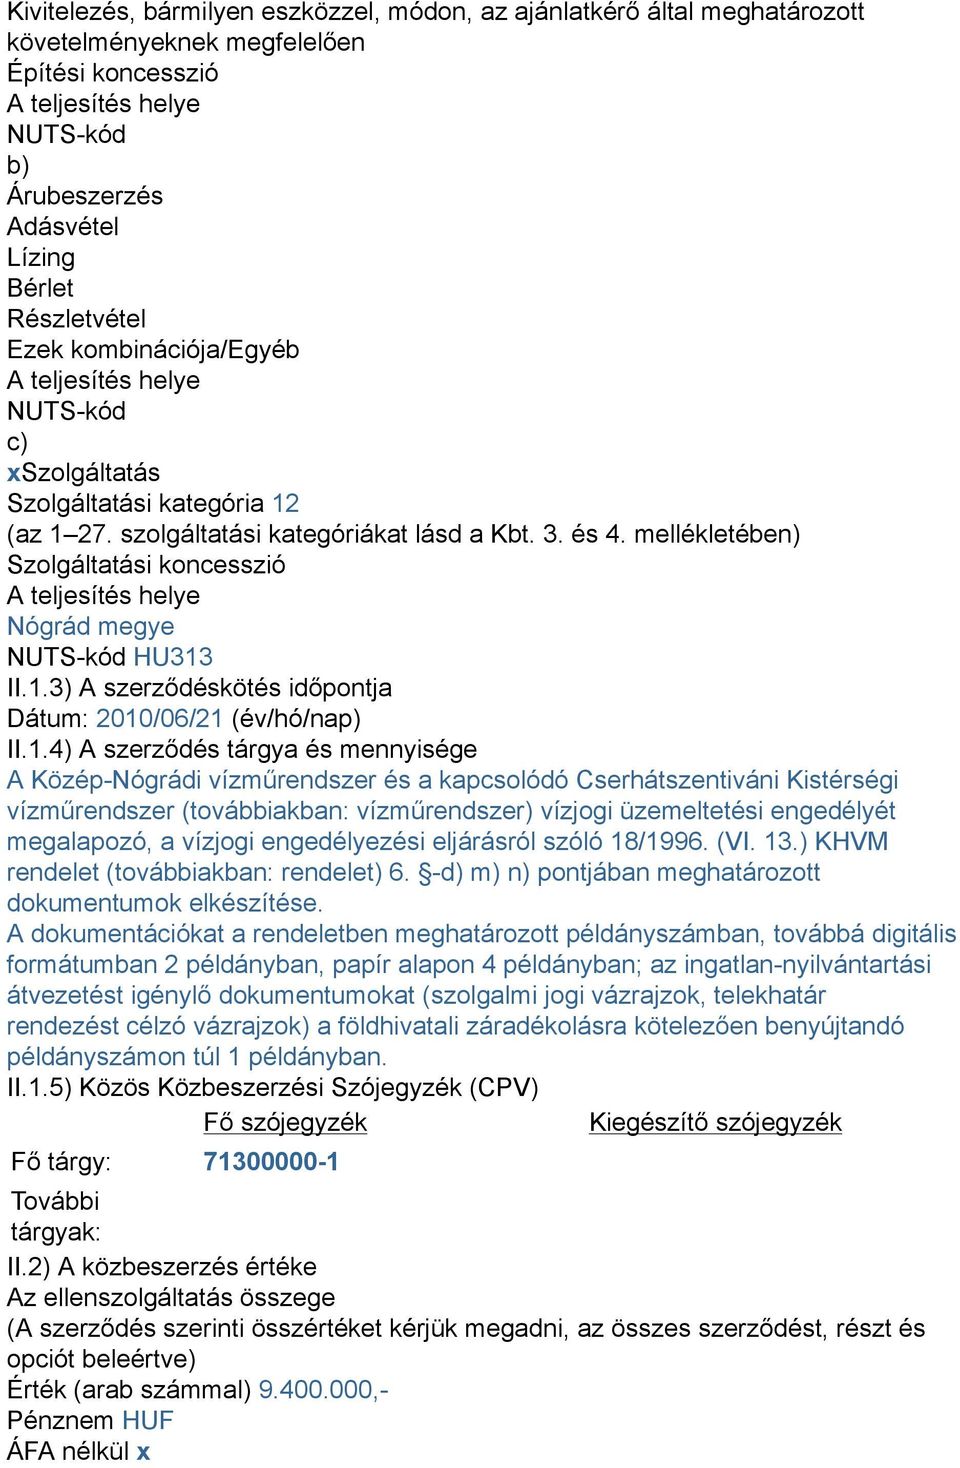 mellékletében) Szolgáltatási koncesszió A teljesítés helye Nógrád megye NUTS-kód HU313